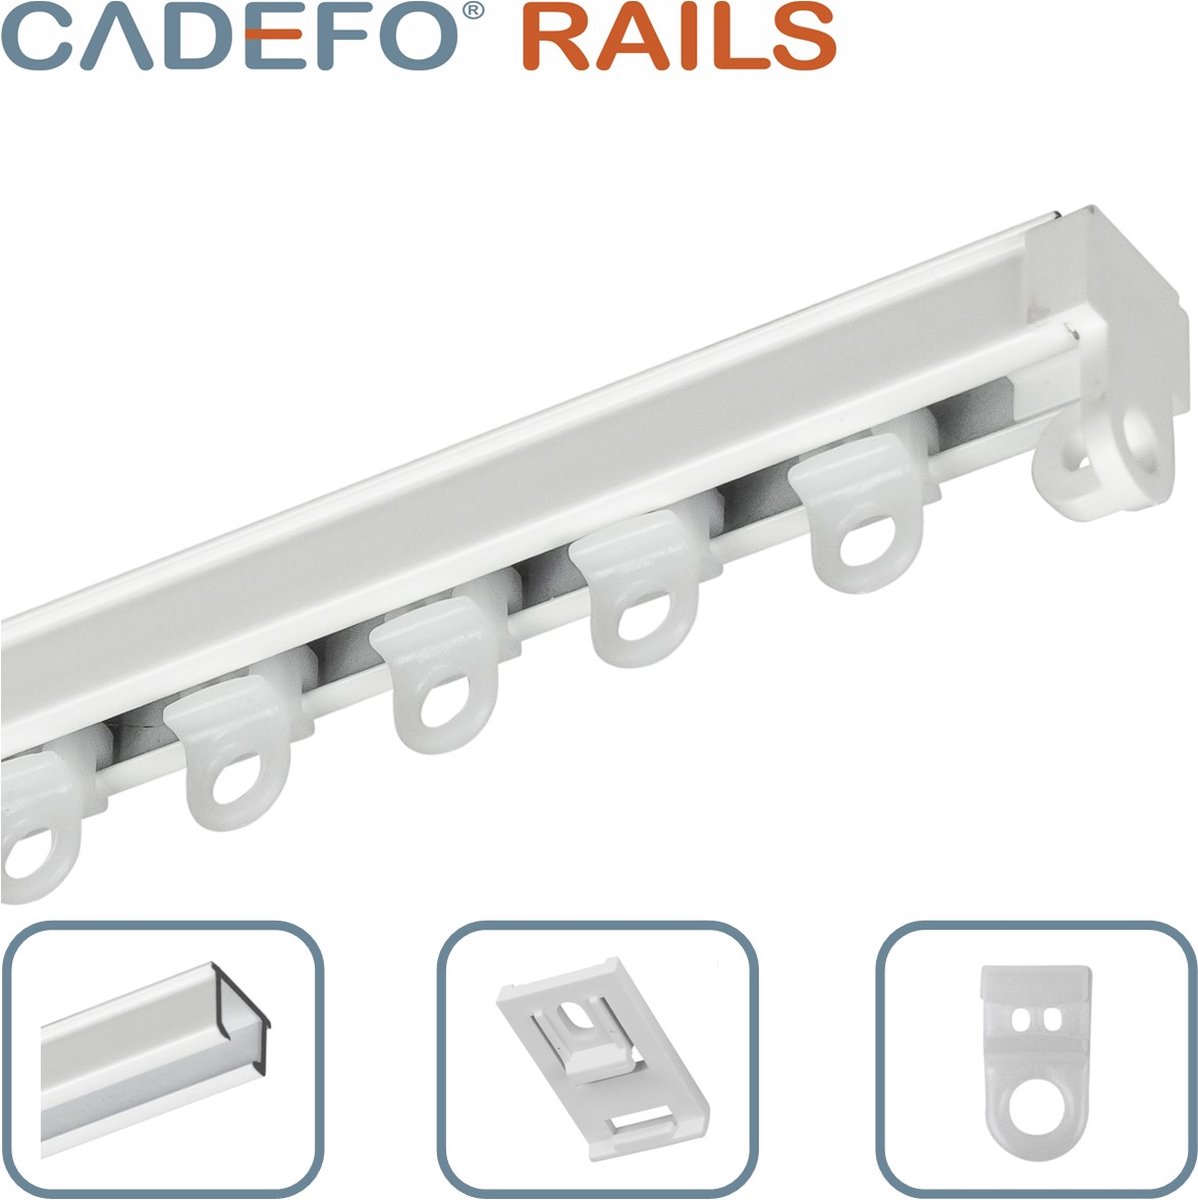 CADEFO RAILS (401 - 450 cm) Gordijnrails - Compleet op maat! - UIT 1 STUK - Leverbaar tot 6 meter - Plafondbevestiging - Lengte 429 cm